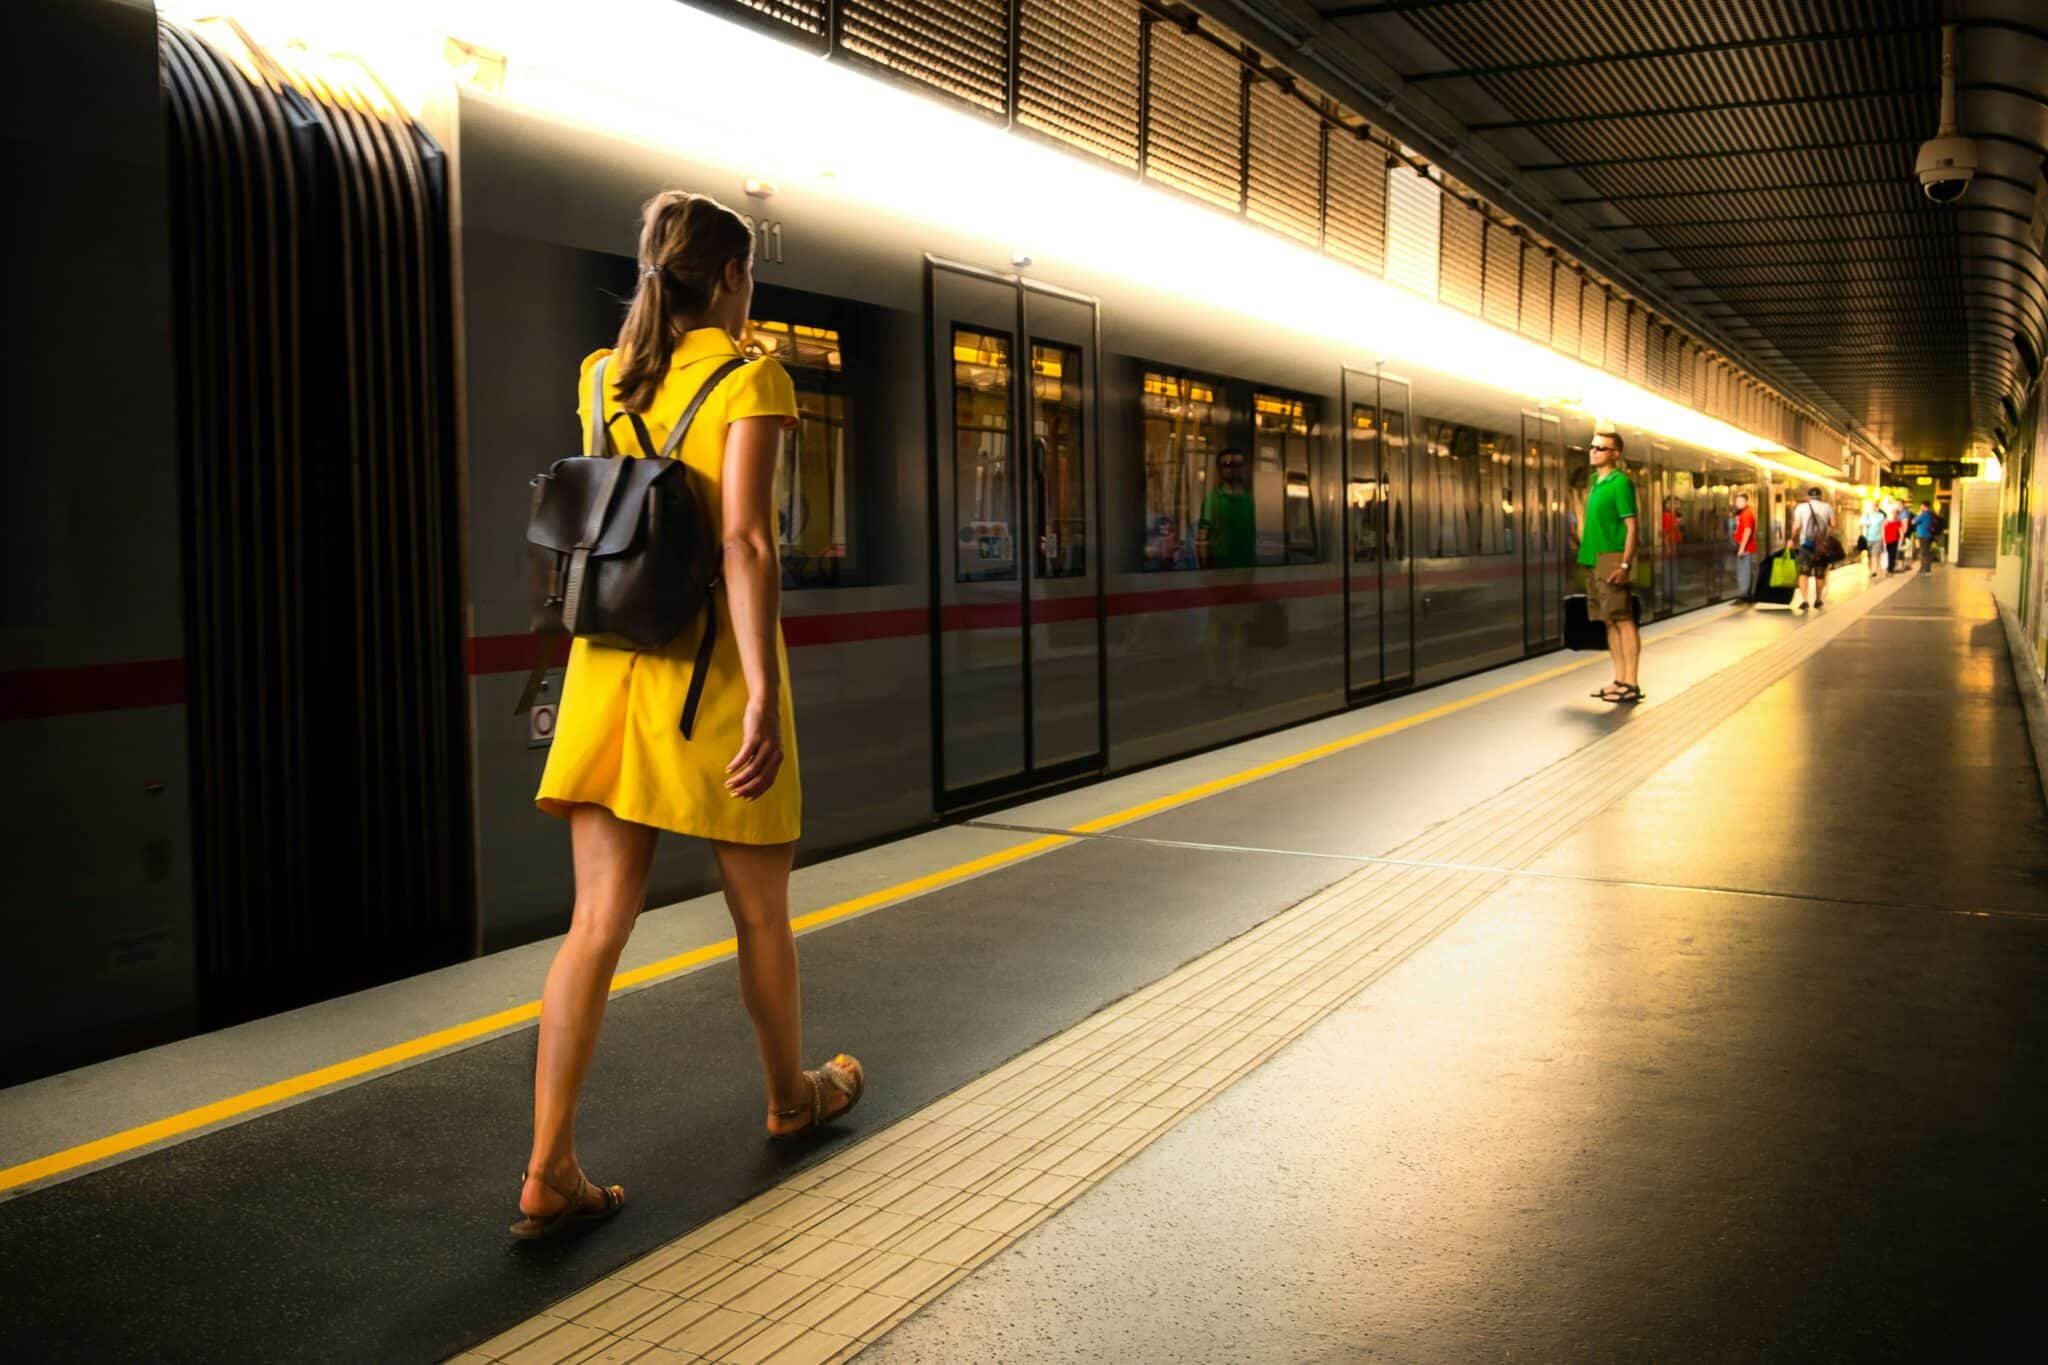 découvrez les avantages du voyage en train et trouvez des informations utiles pour organiser votre prochain voyage en train.